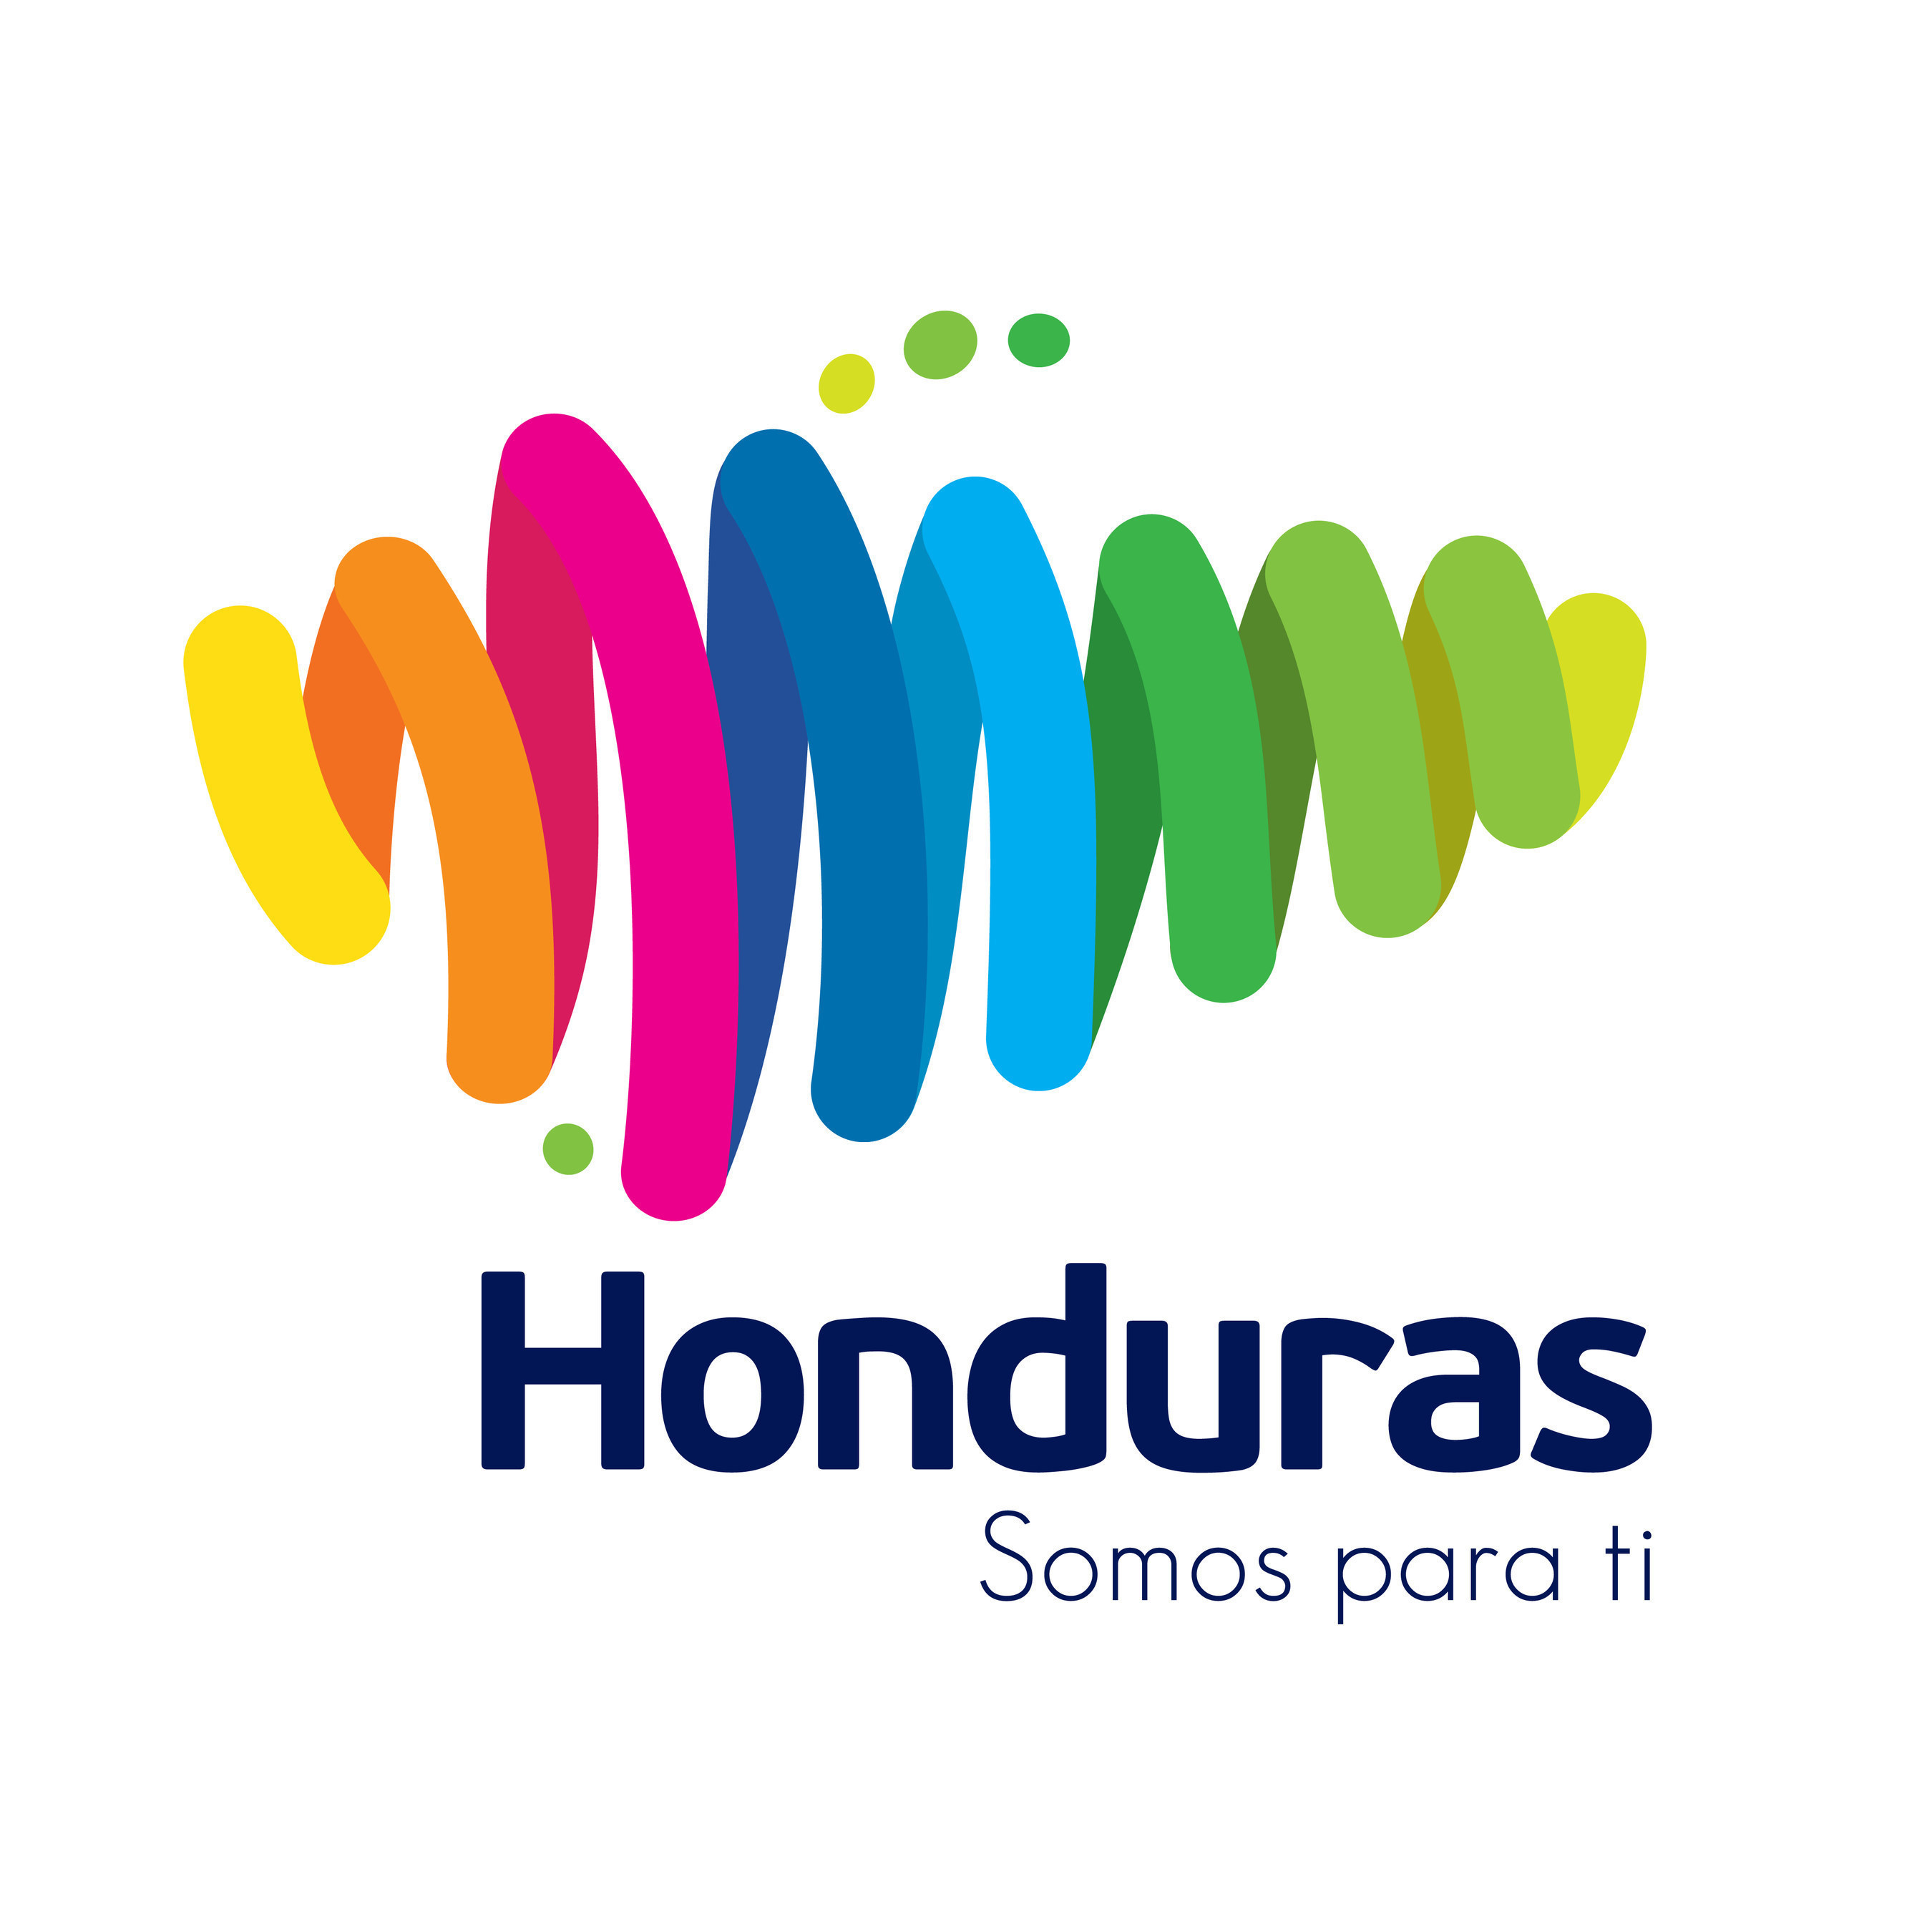 Honduras official country brand logo. "Honduras: Somos para ti" (Honduras: We are for you)